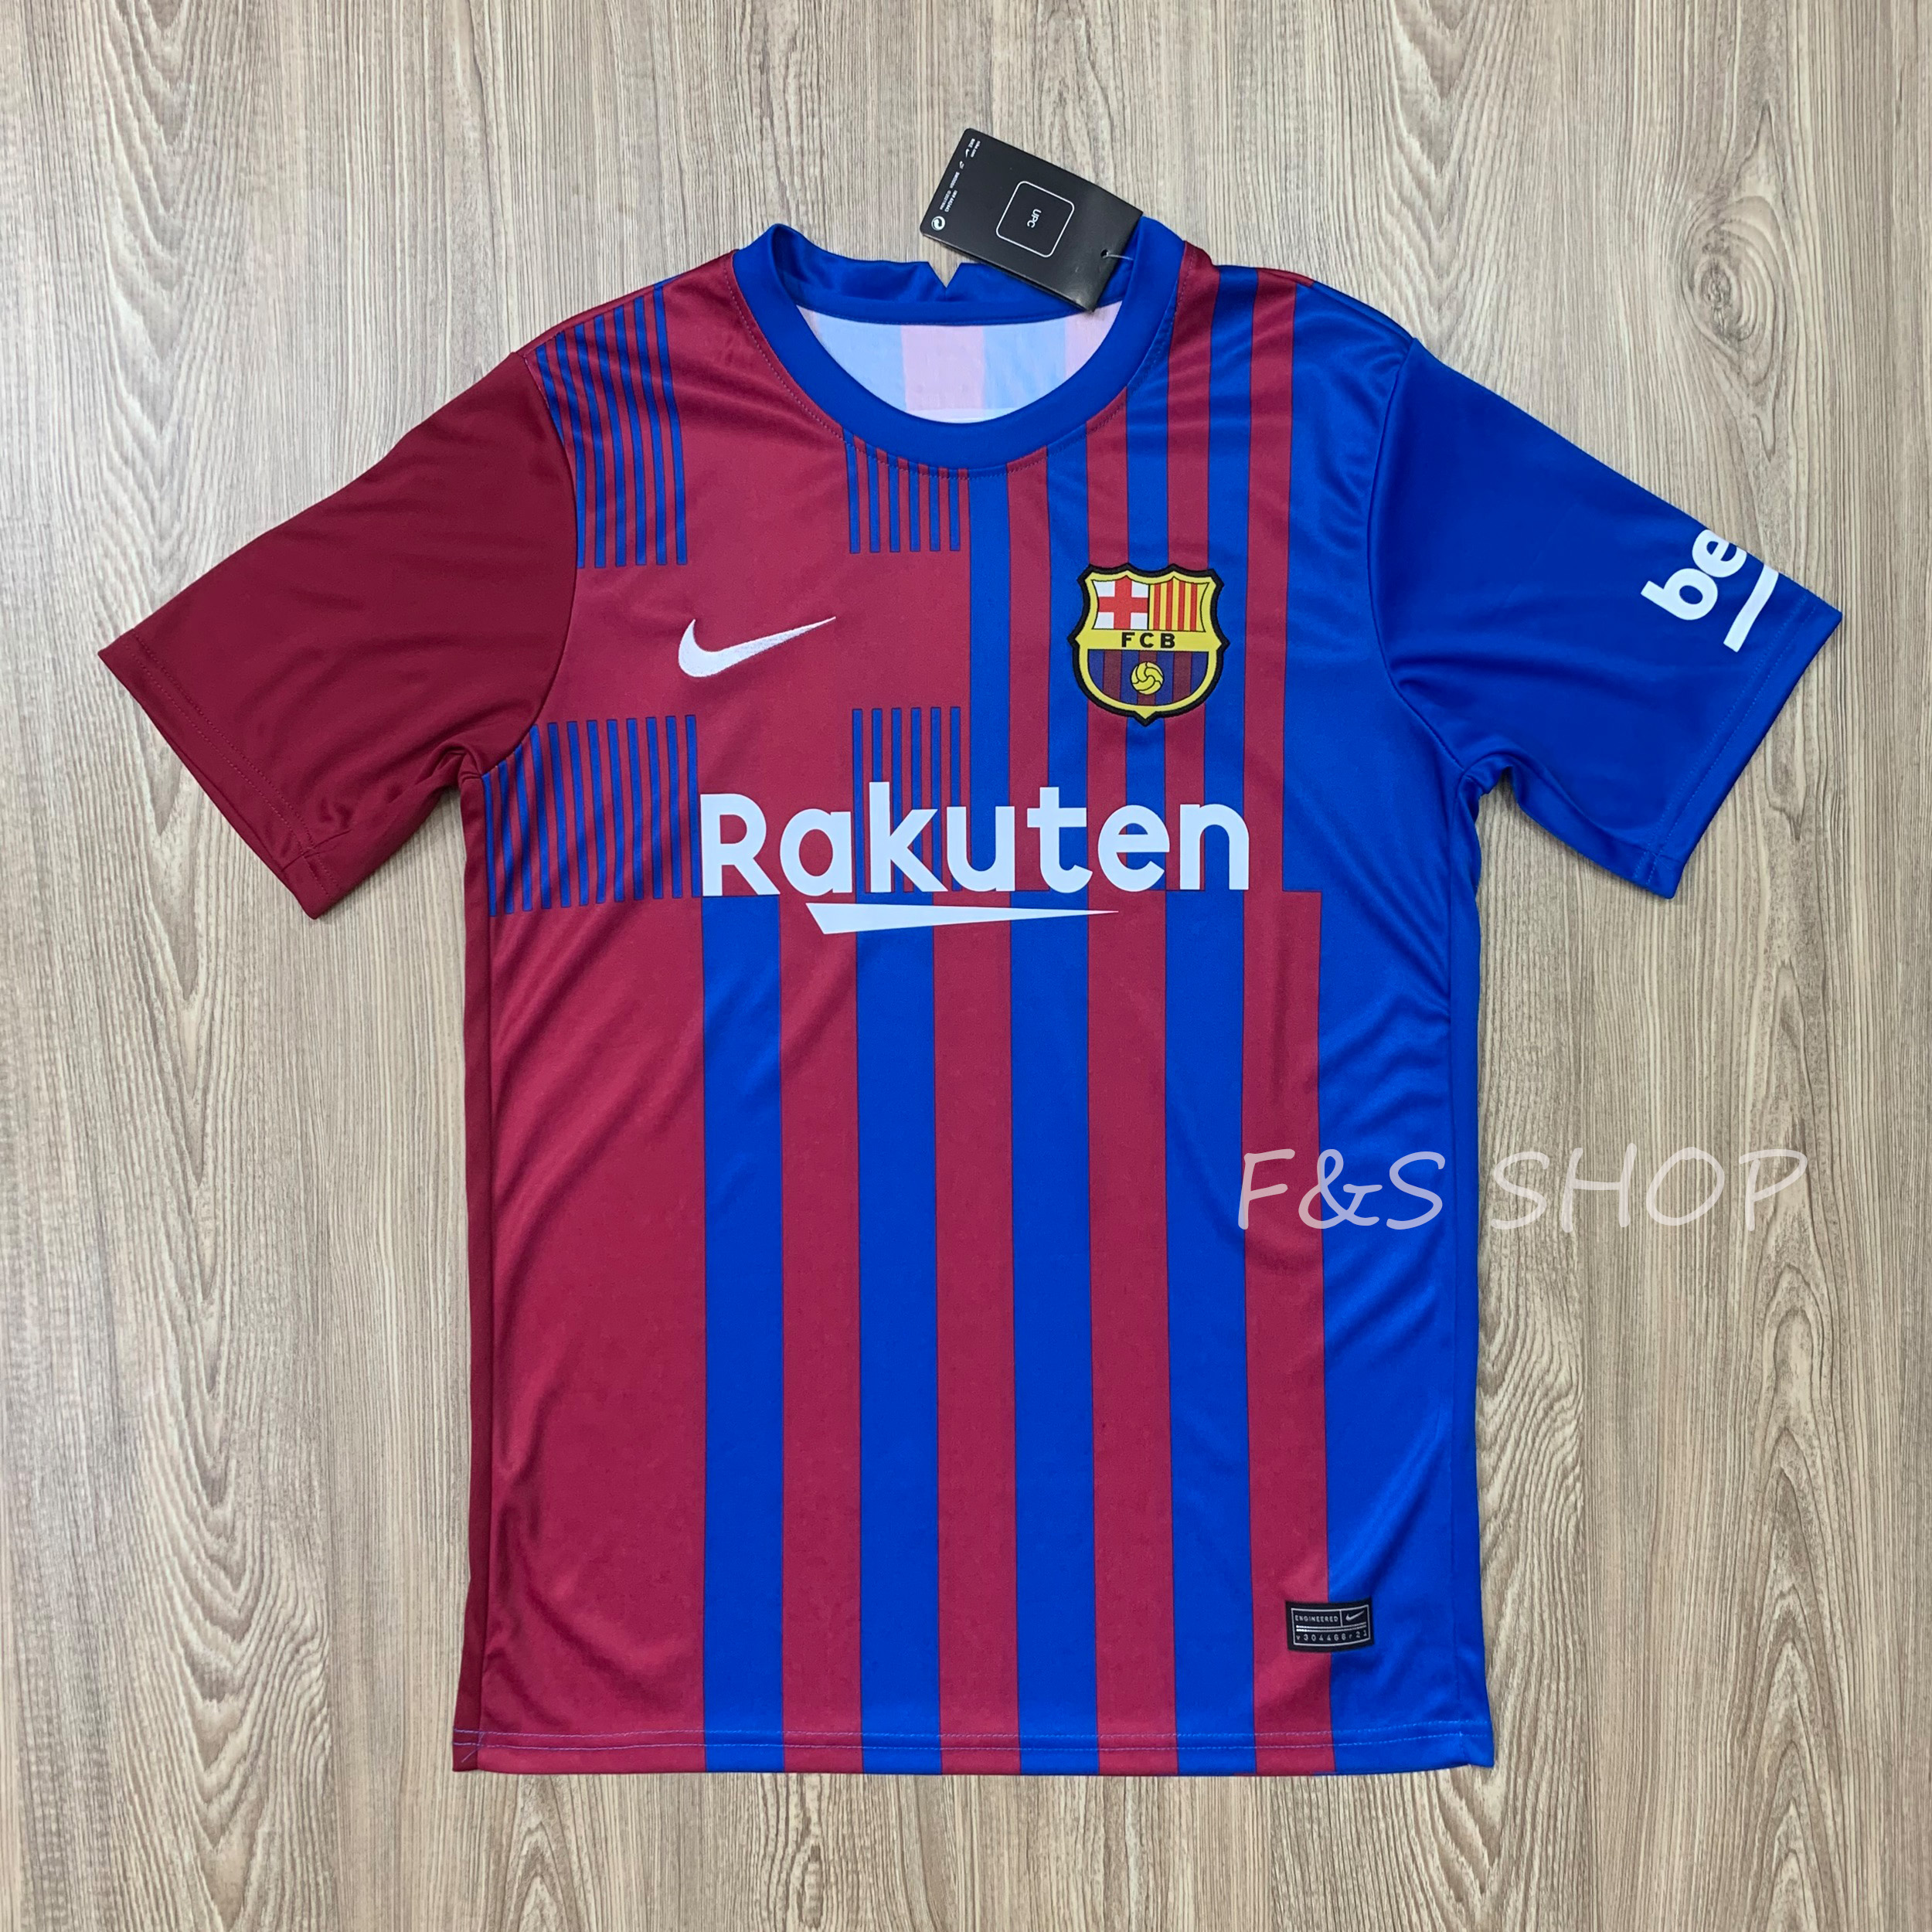 ล่าสุด! ฤดูกาล 2022 เสื้อสโมสรฟุตบอล เสื้อกีฬาผู้ชาย ทีม Barcelona ปี 22 ( บาซ่า) เสื้อบอล เสื้อกีฬา ใส่สบาย ผ้ายืด รับประกันคุณภาพ ผ้าเกรด A